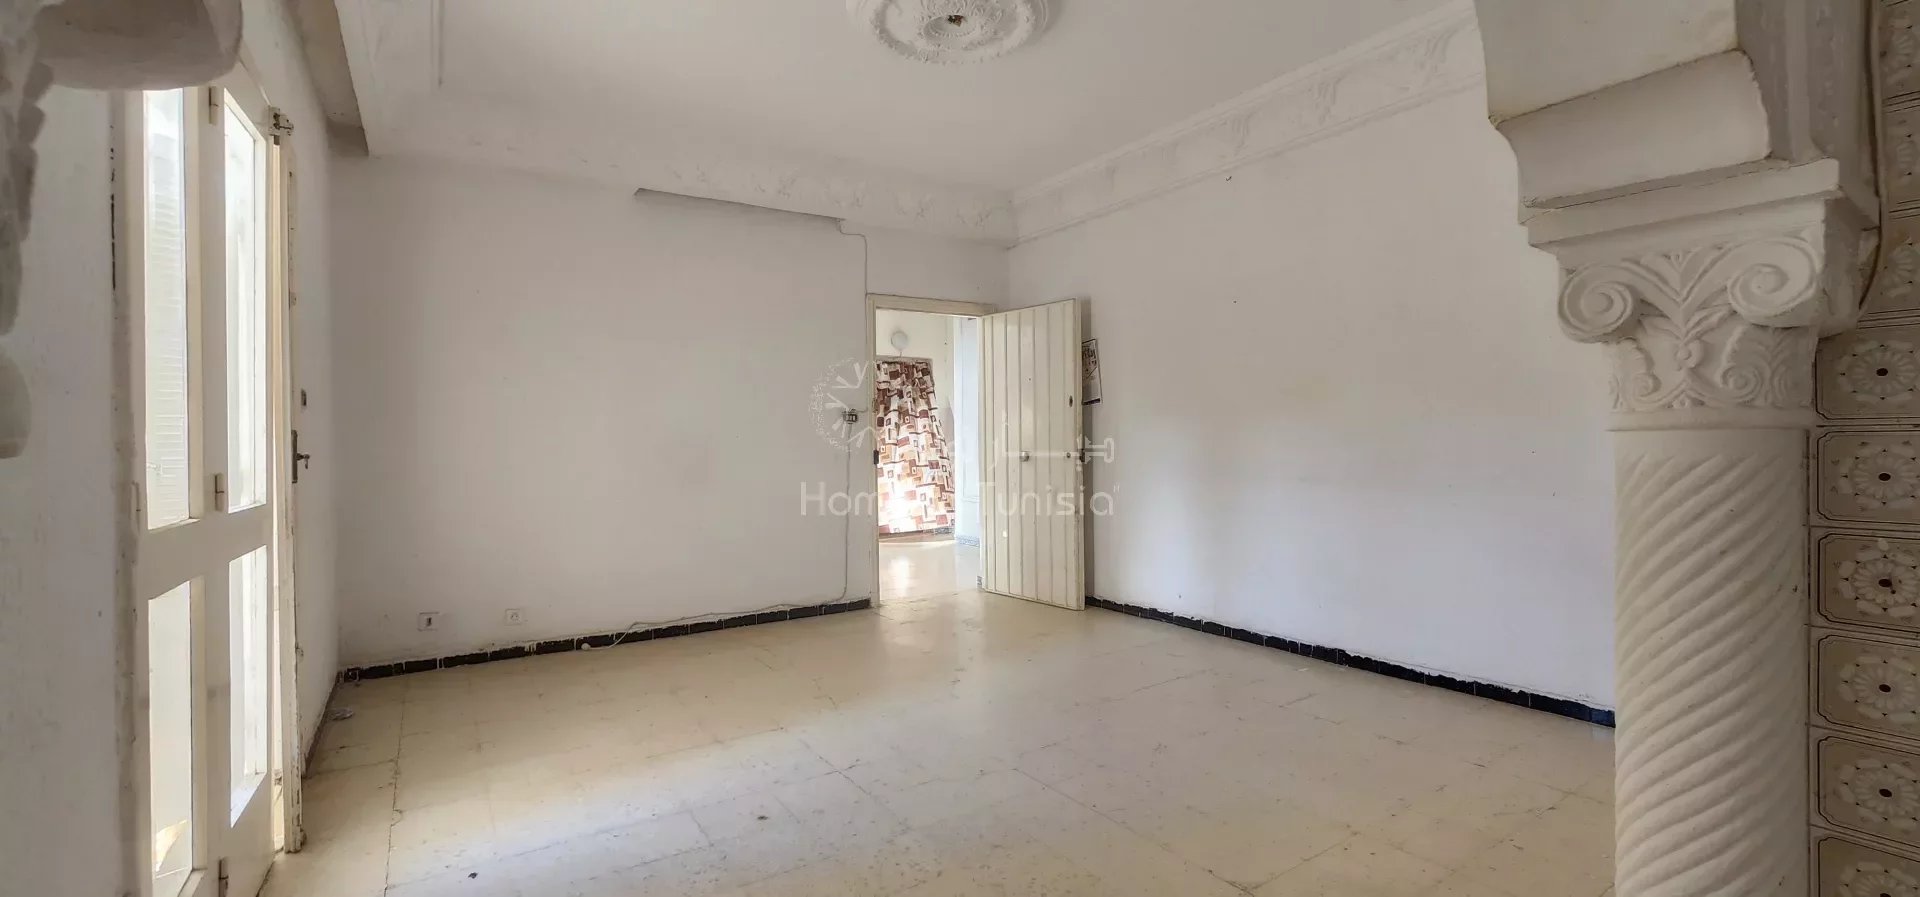 Verkauf Wohnung - Cité Jaouhara - Tunesien